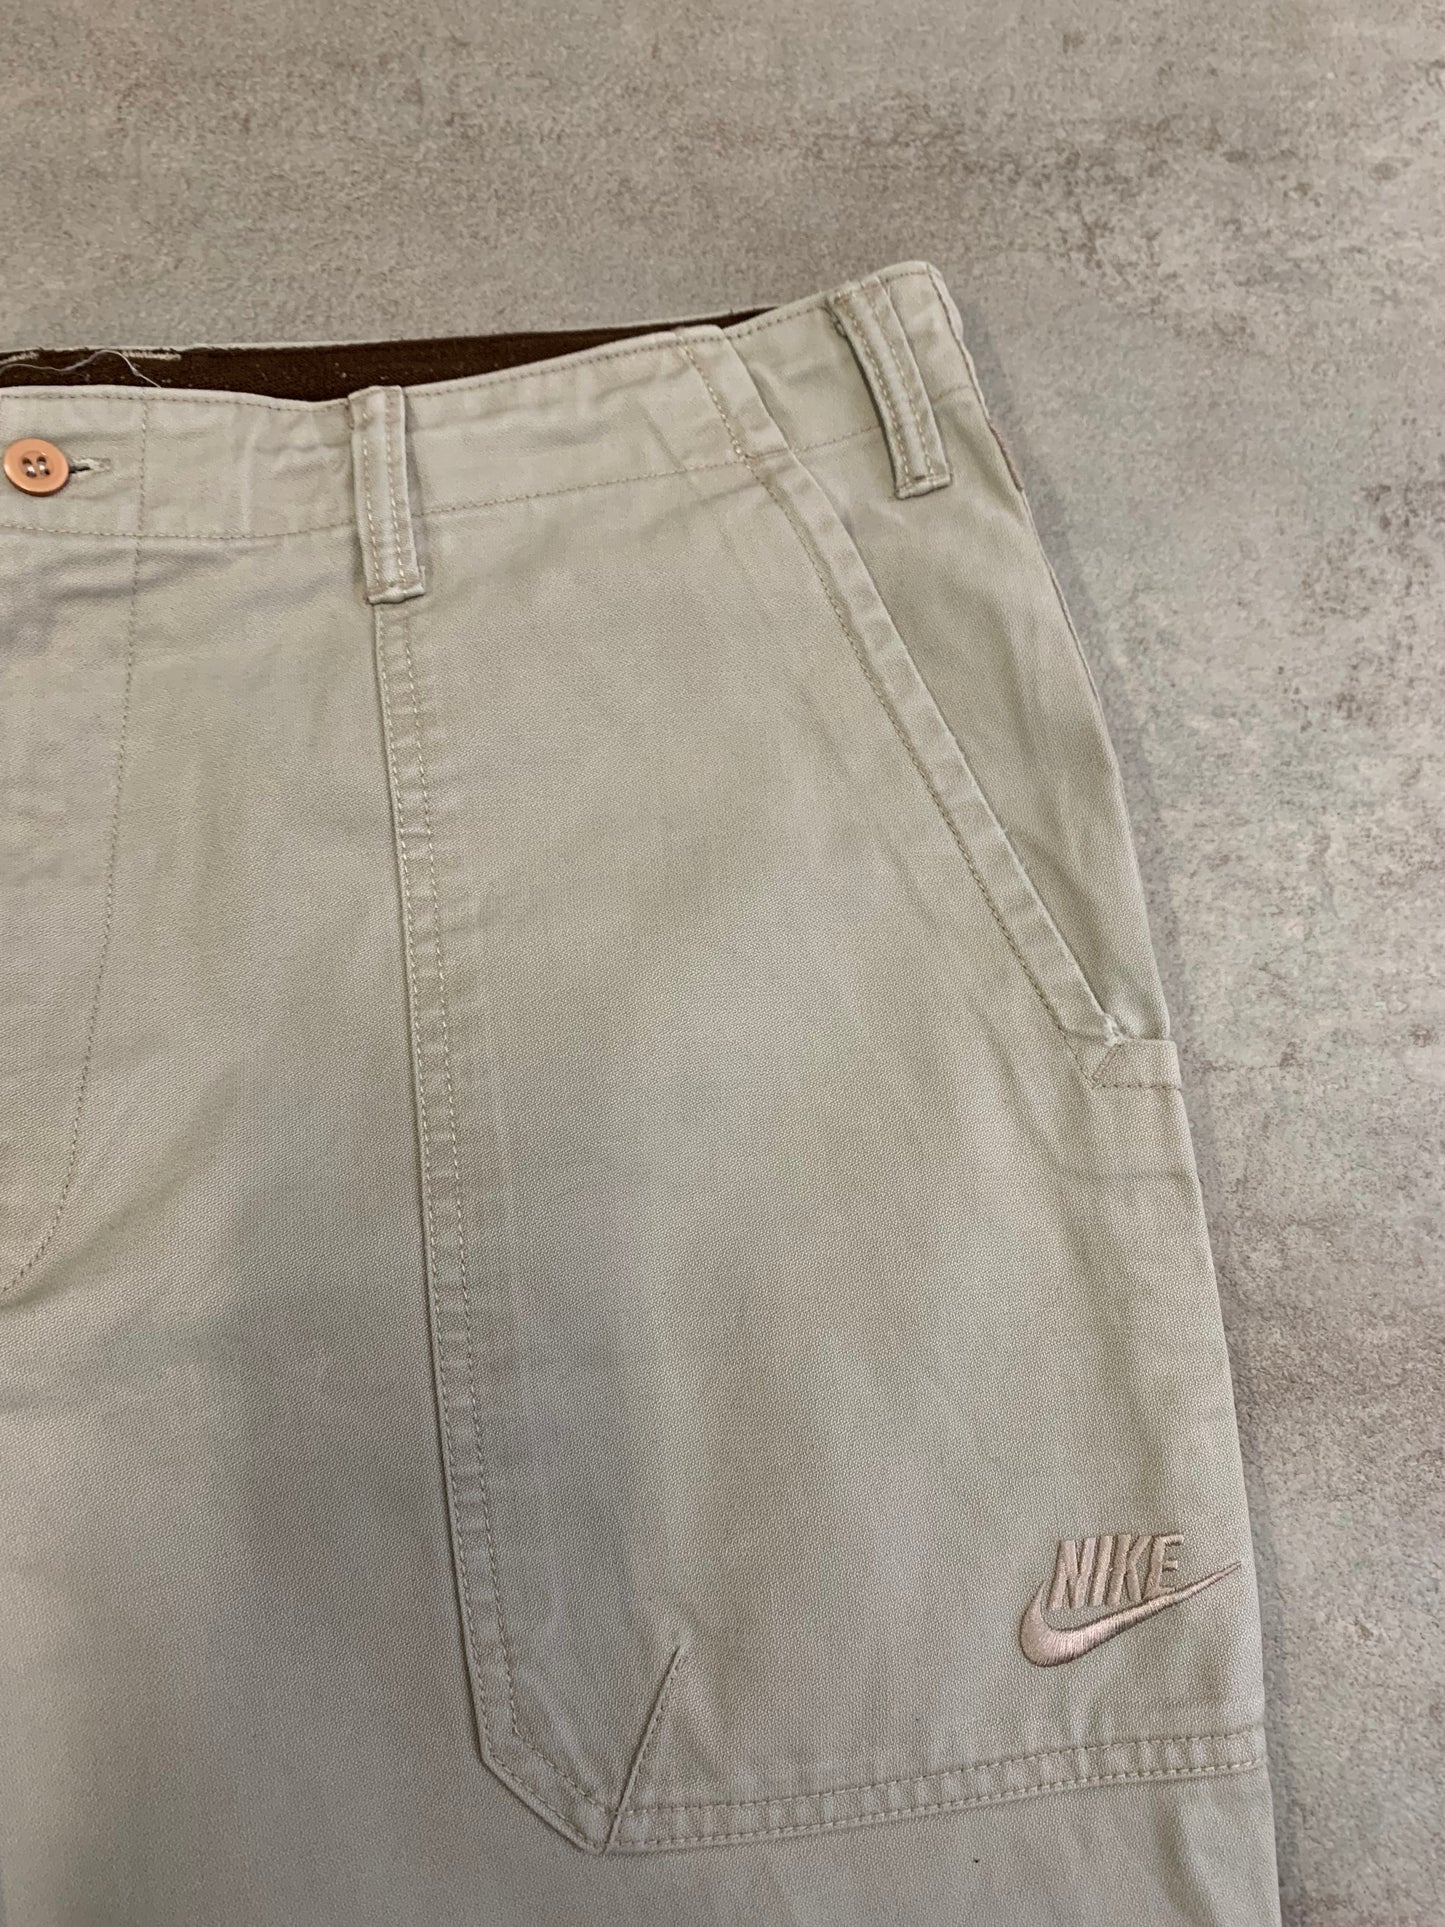 Worker Baggy Pants Vintage Nike 00's